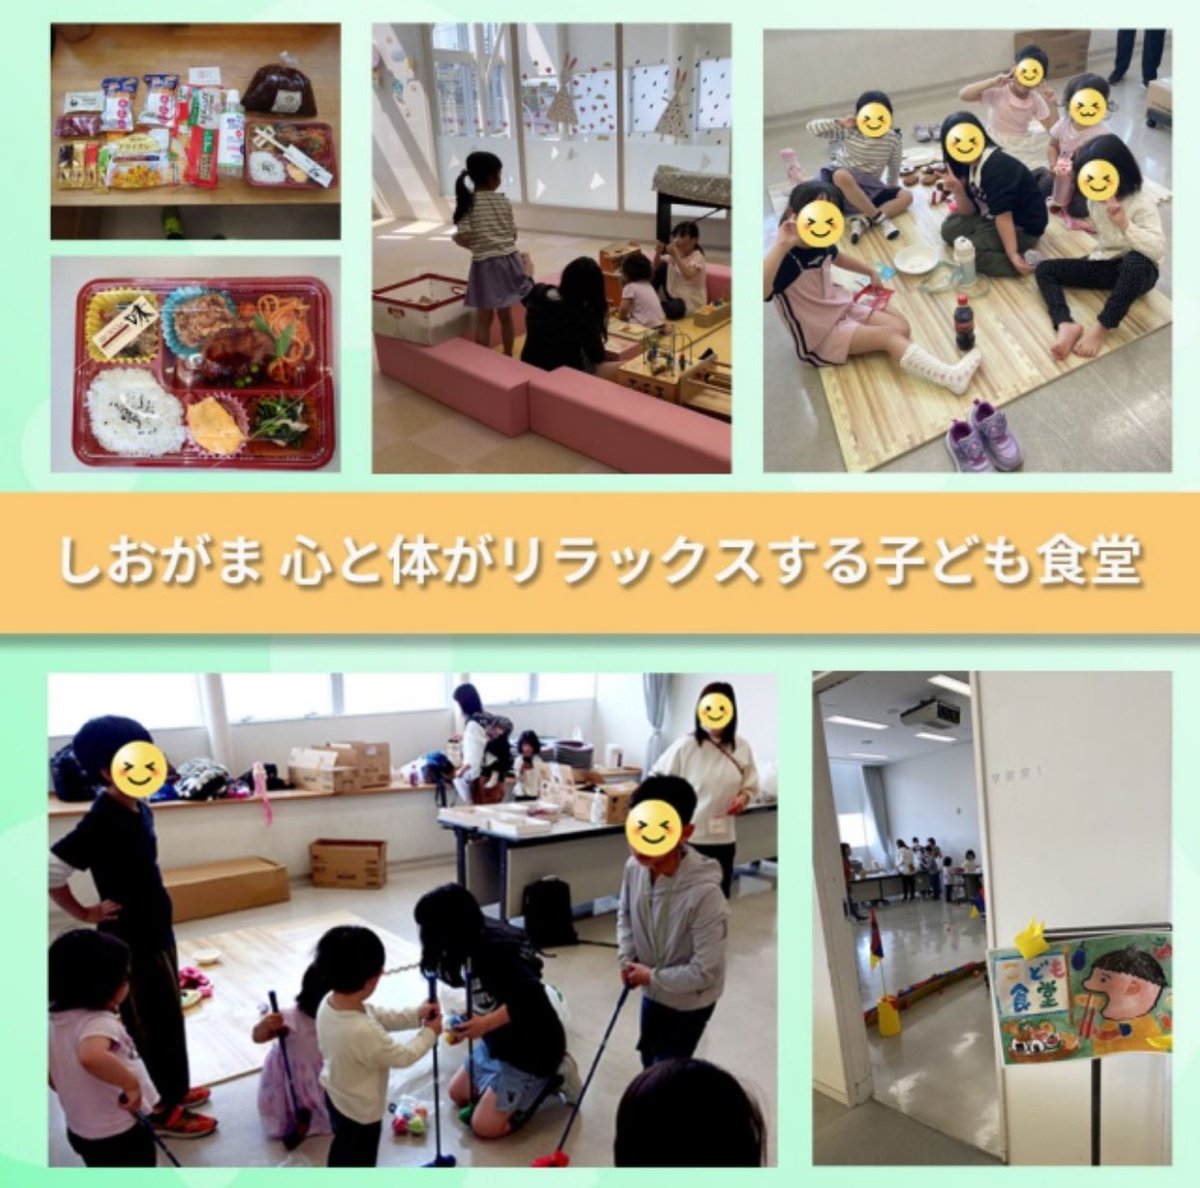 【#こども食堂 開催報告🌈】　
4/20宮城県塩竈市の「心と体がリラックスするこども食堂」開催！
コロッケ弁当を15食提供しました。ポケモンの塗り絵や折り紙もして、こどもたちは飛行機を折って楽しんでいました♪
#ミライテラス